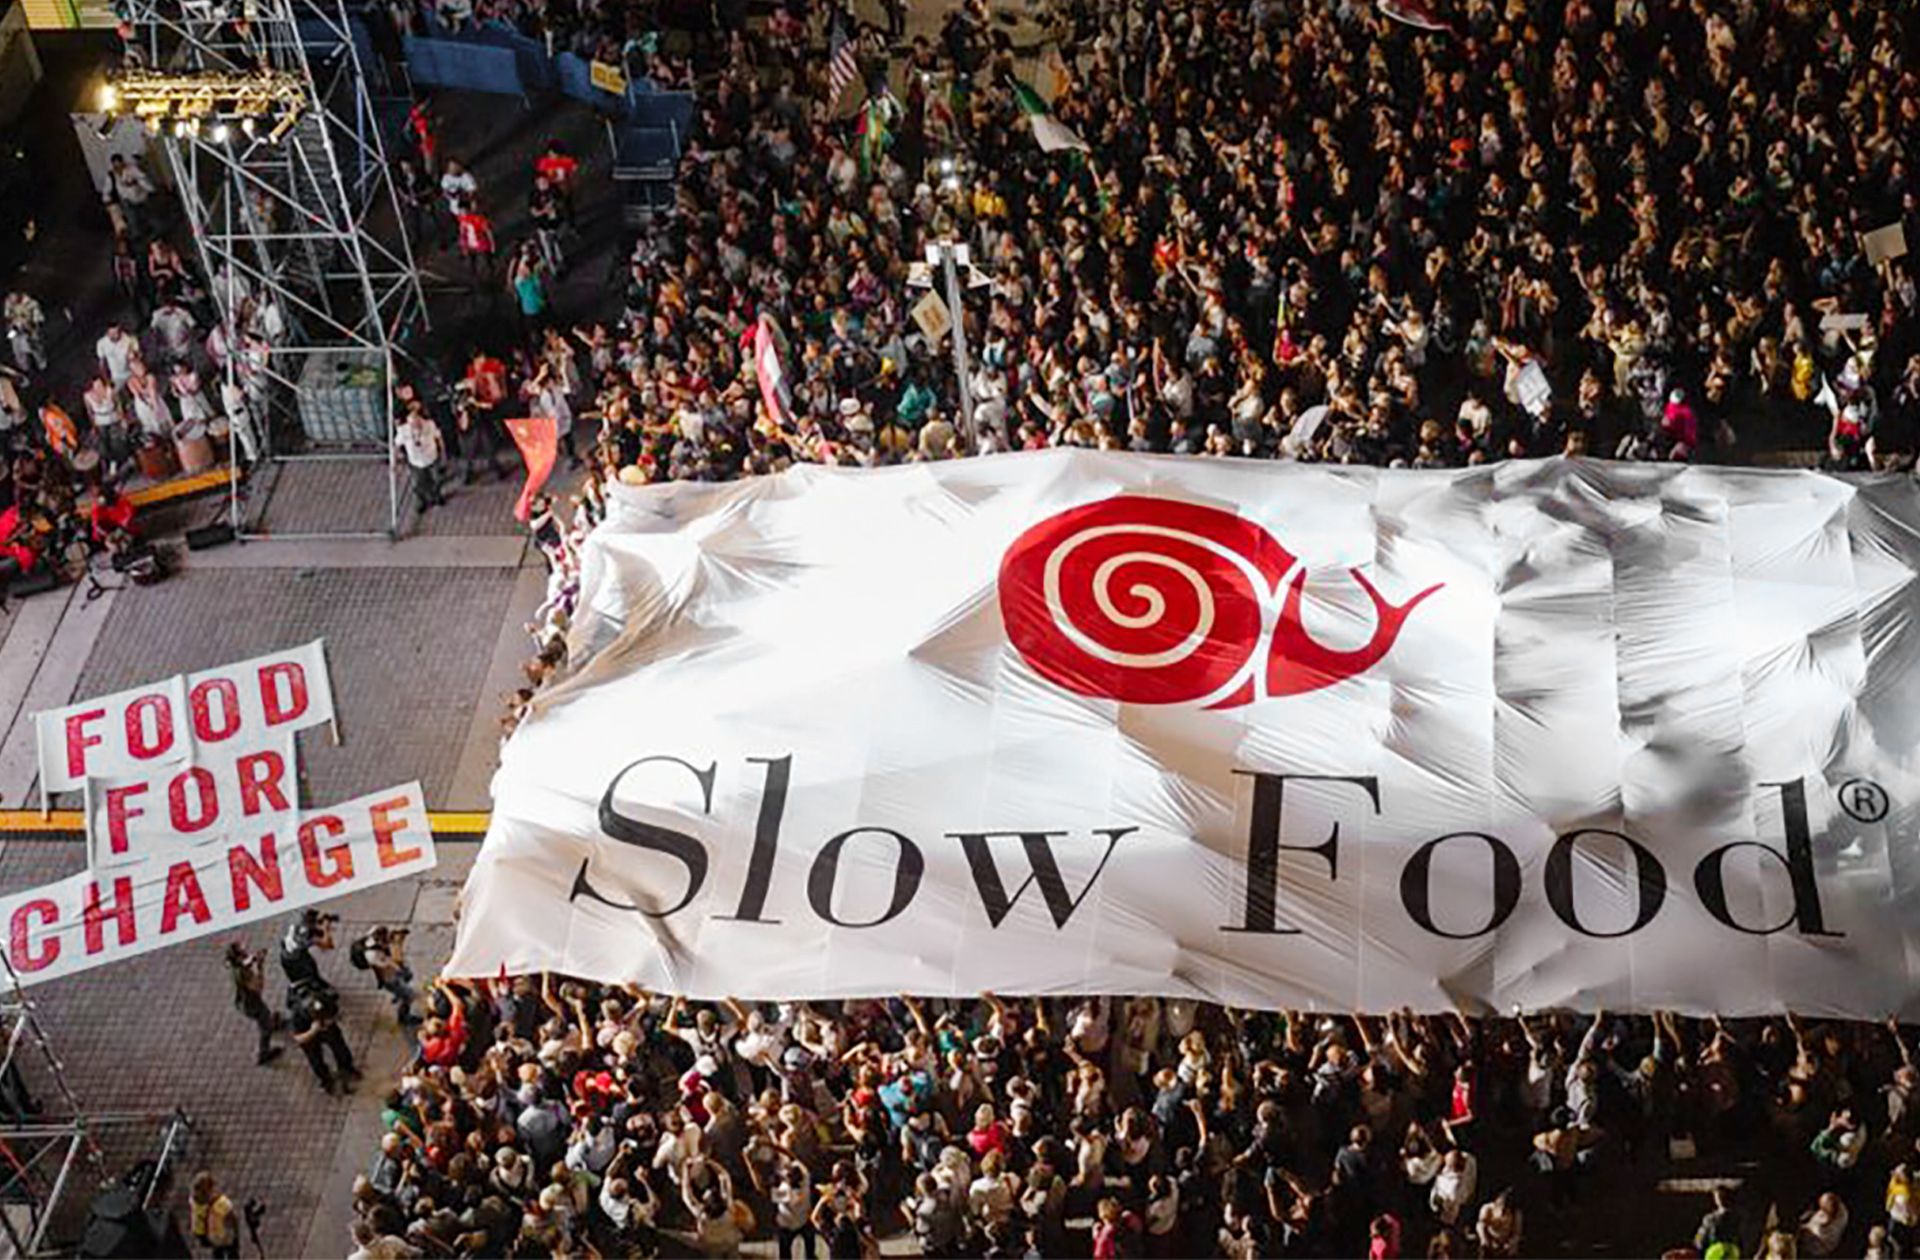 Slow Food ist eine globale Bewegung, die sich für ein sozial und ökologisch verantwortungsvolles Lebensmittelsystem einsetzt, welches die biokulturelle Vielfalt und das Tierwohl schützt. Seit der Gründung 1986 hat sich Slow Food zu einer Organisation entwickelt, die Millionen von Menschen in 170 Ländern einbezieht.